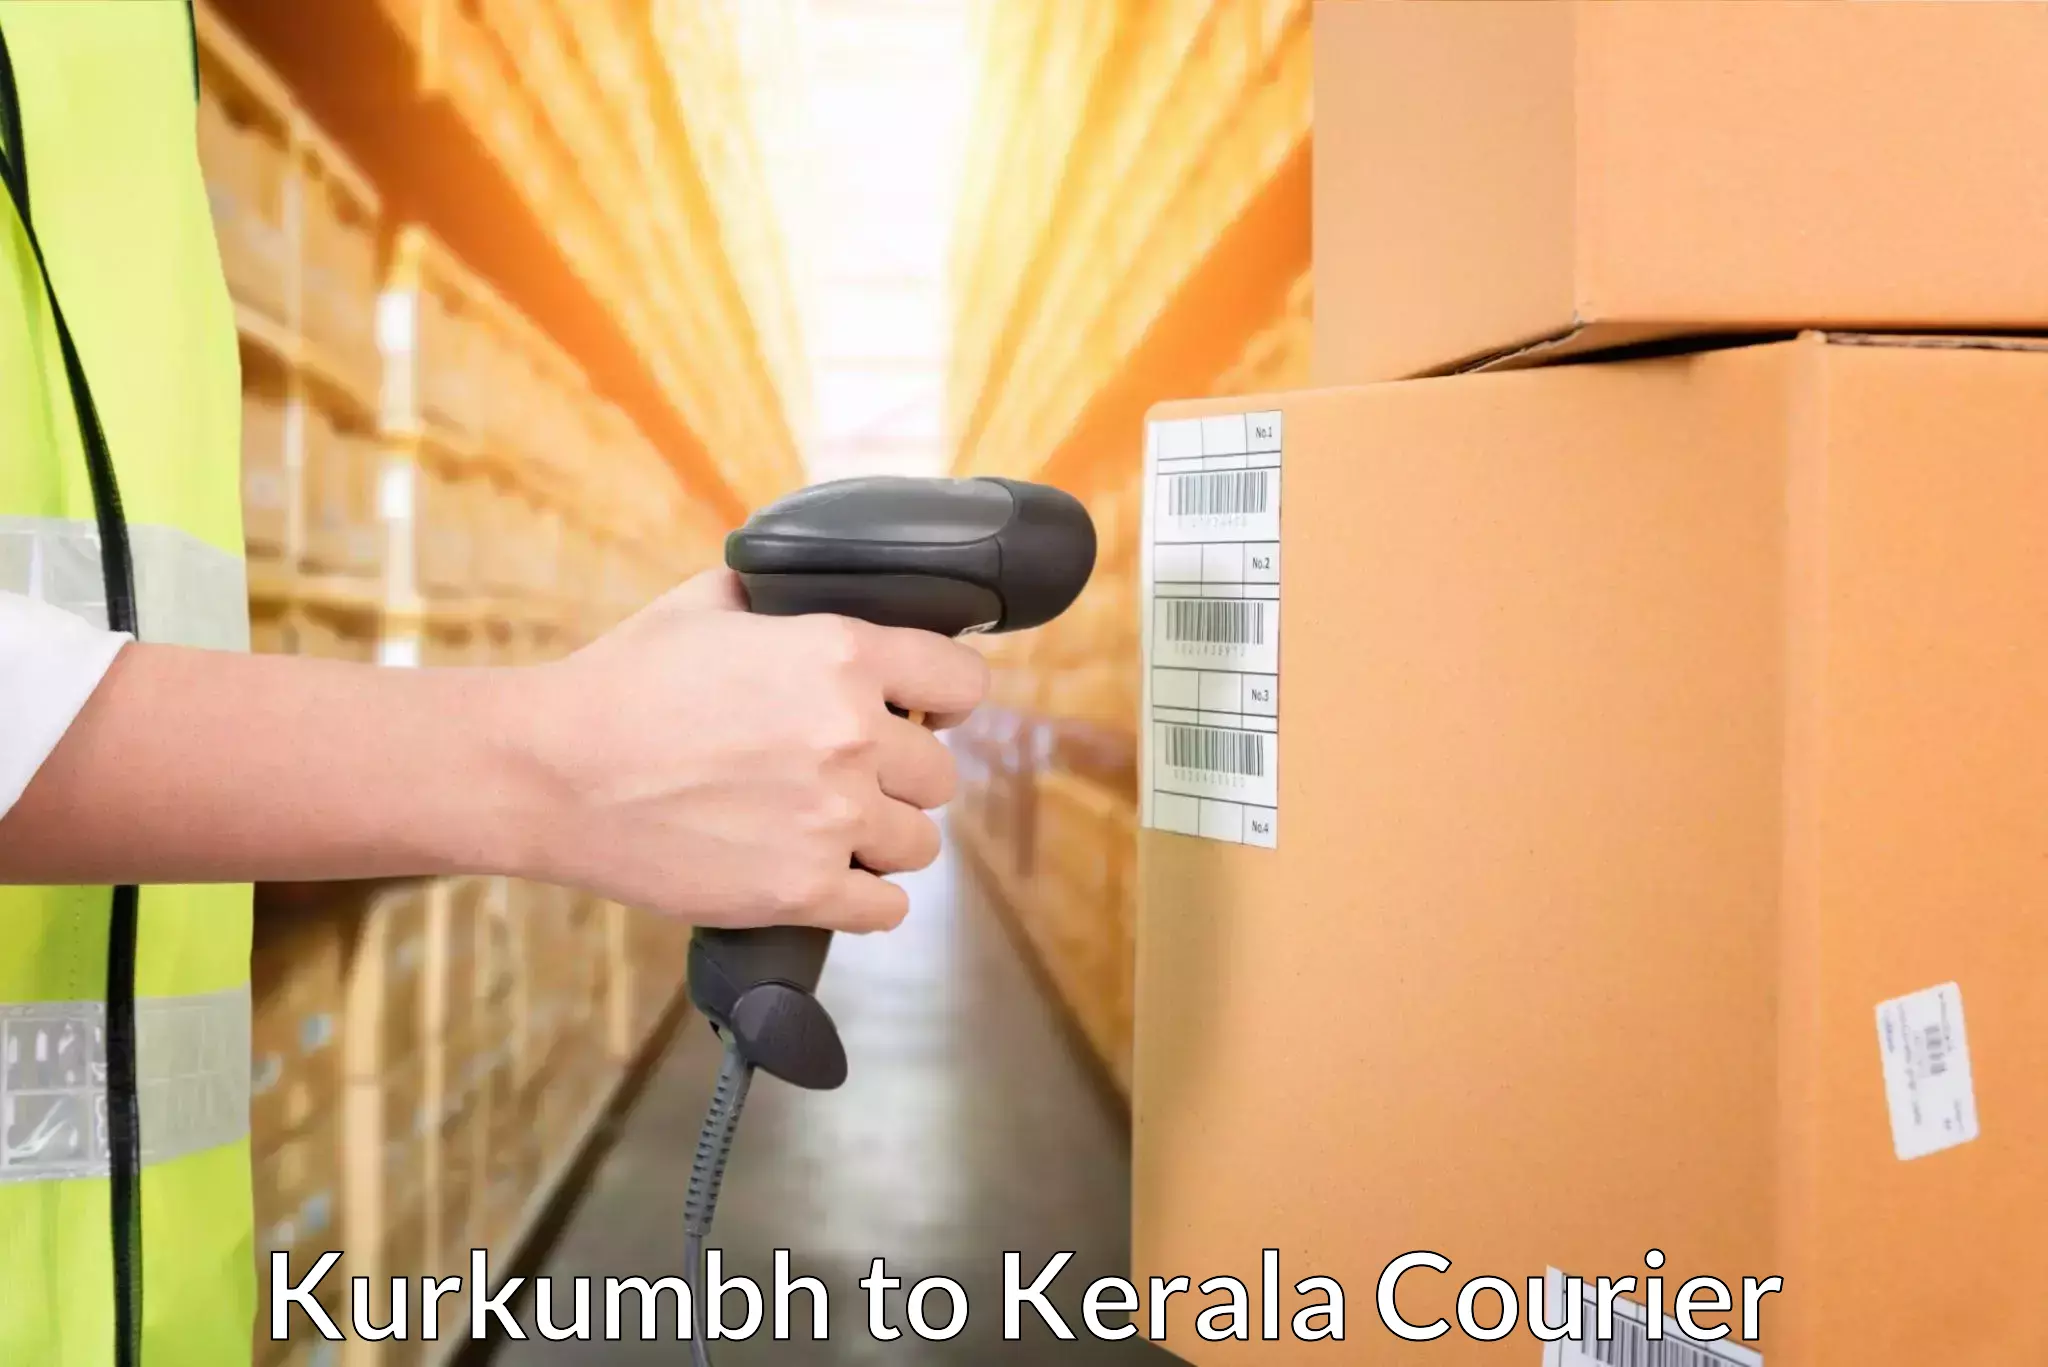 Online courier booking Kurkumbh to Kottayam